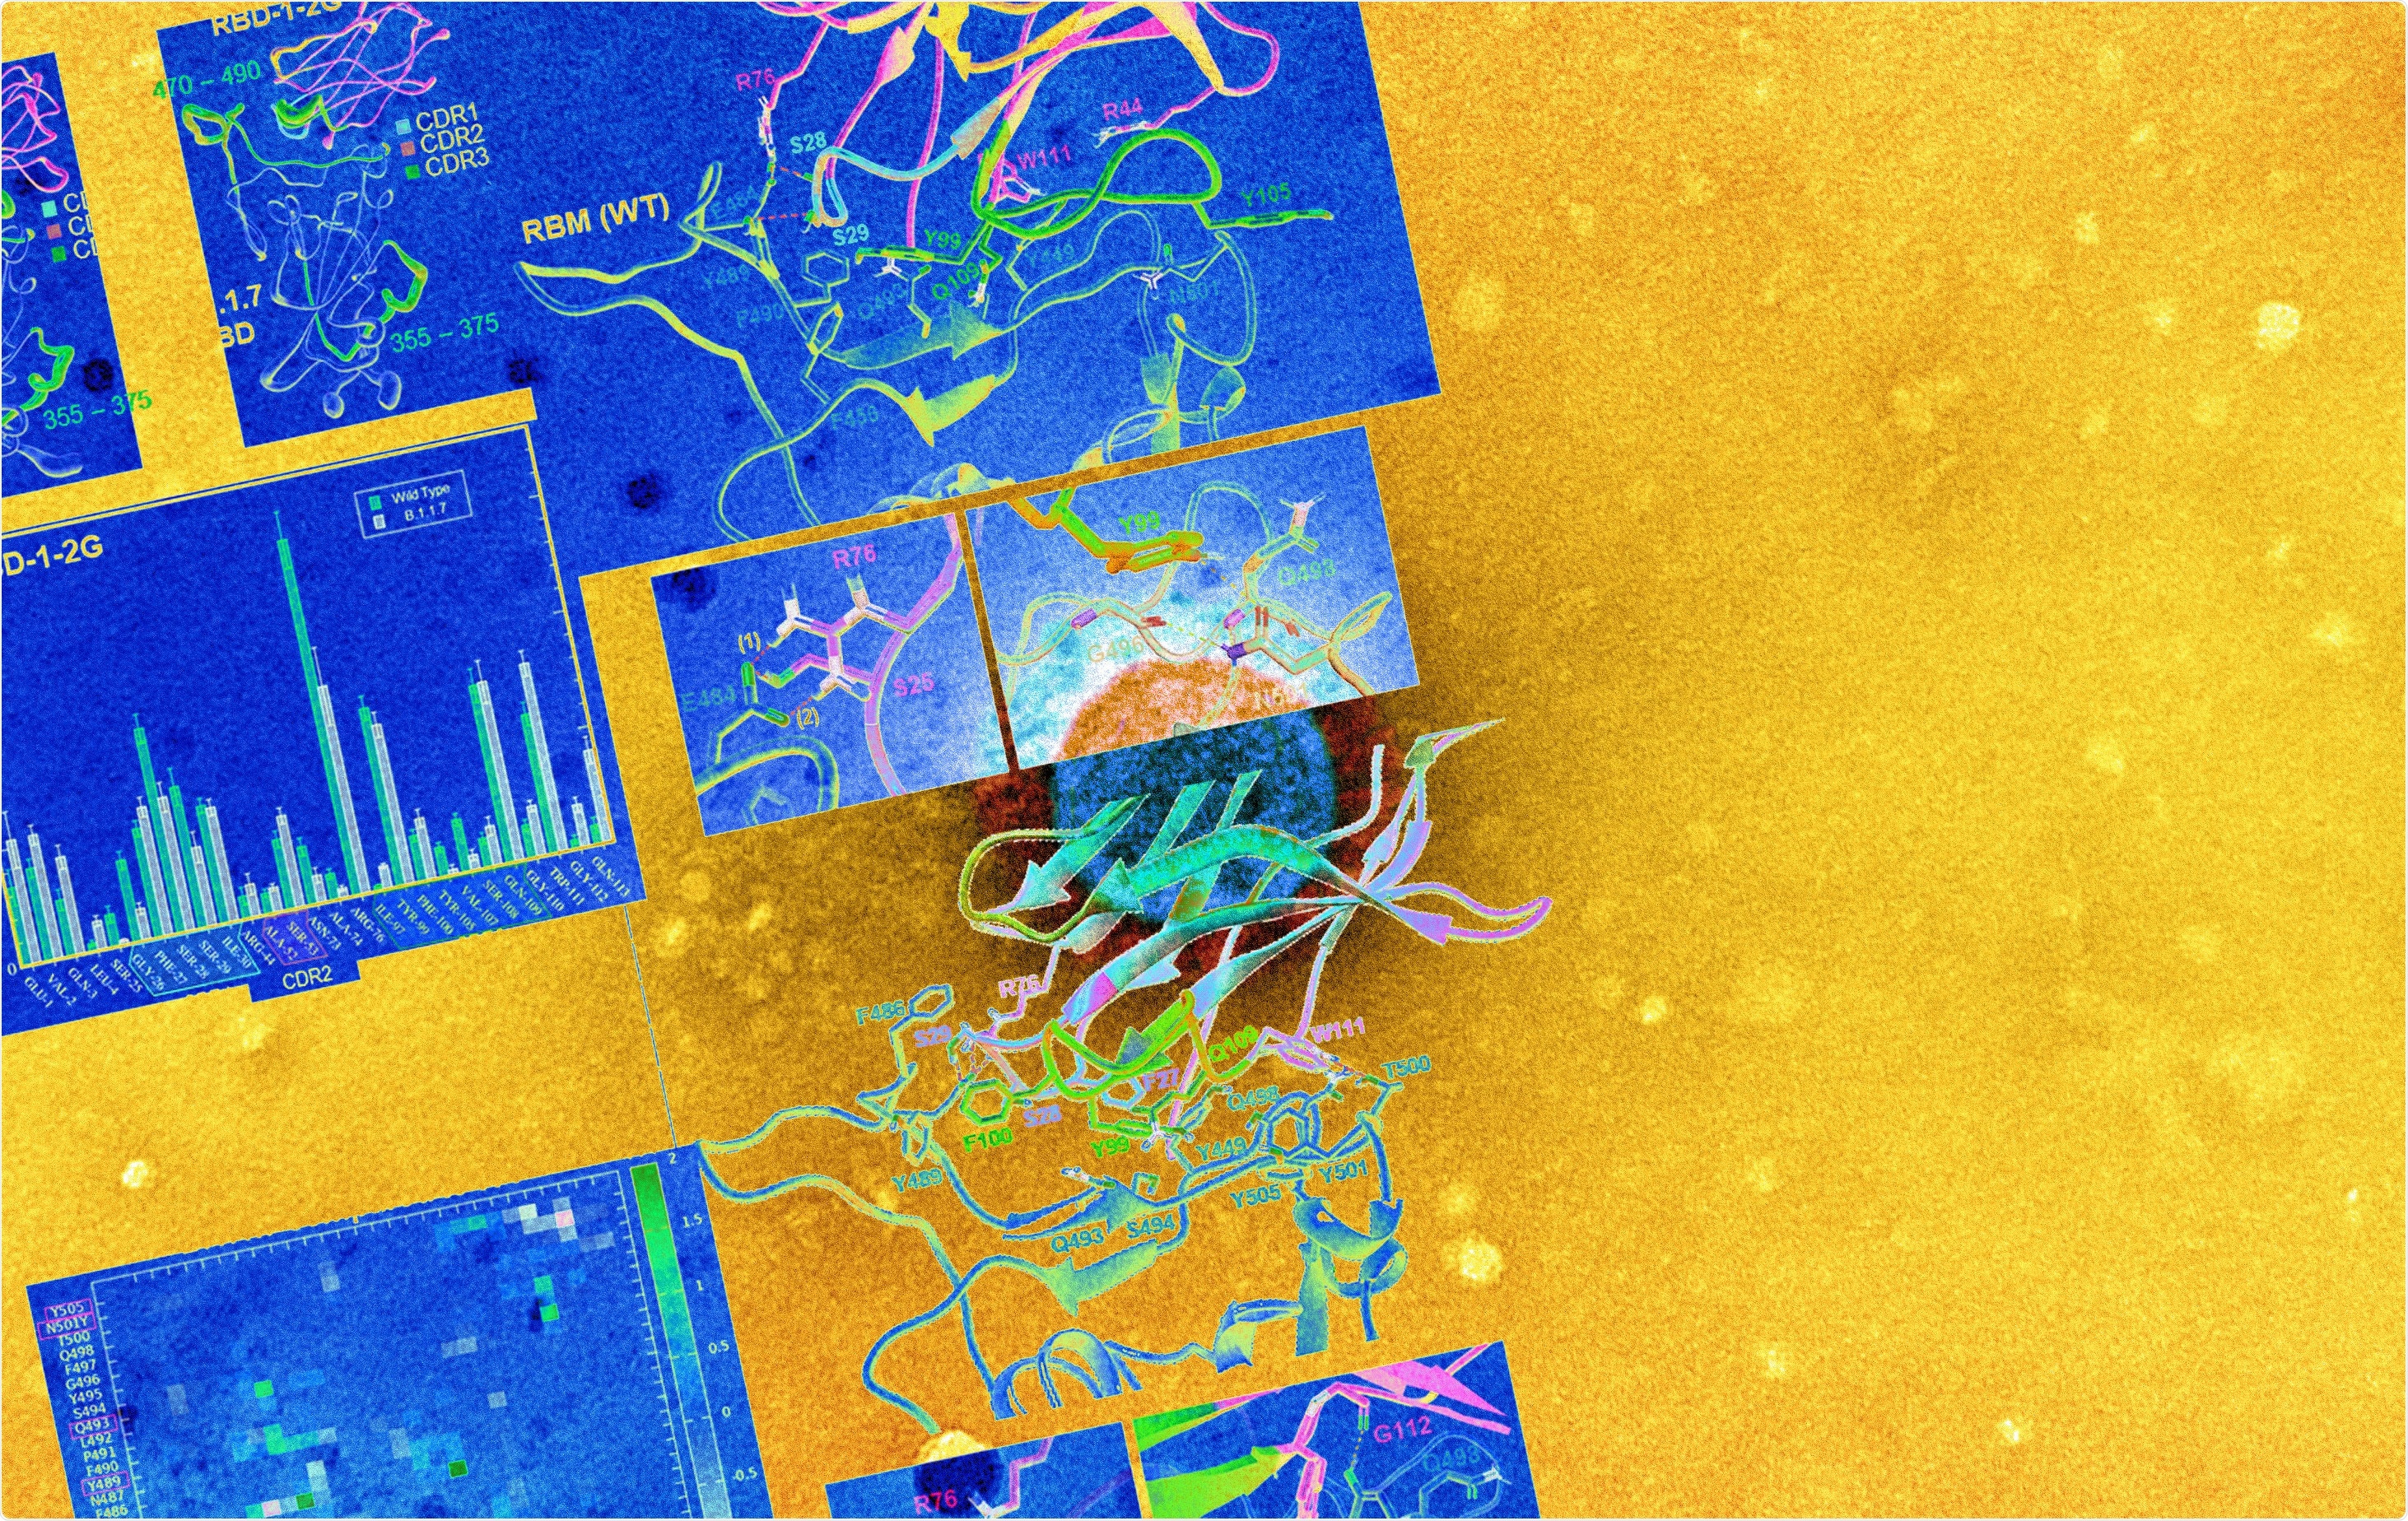 Estudo: O RBD-1-2G nanobody humanizado tolera a mutação do ponto N501Y para neutralizar SARS-CoV-2. Crédito de imagem: NIAID